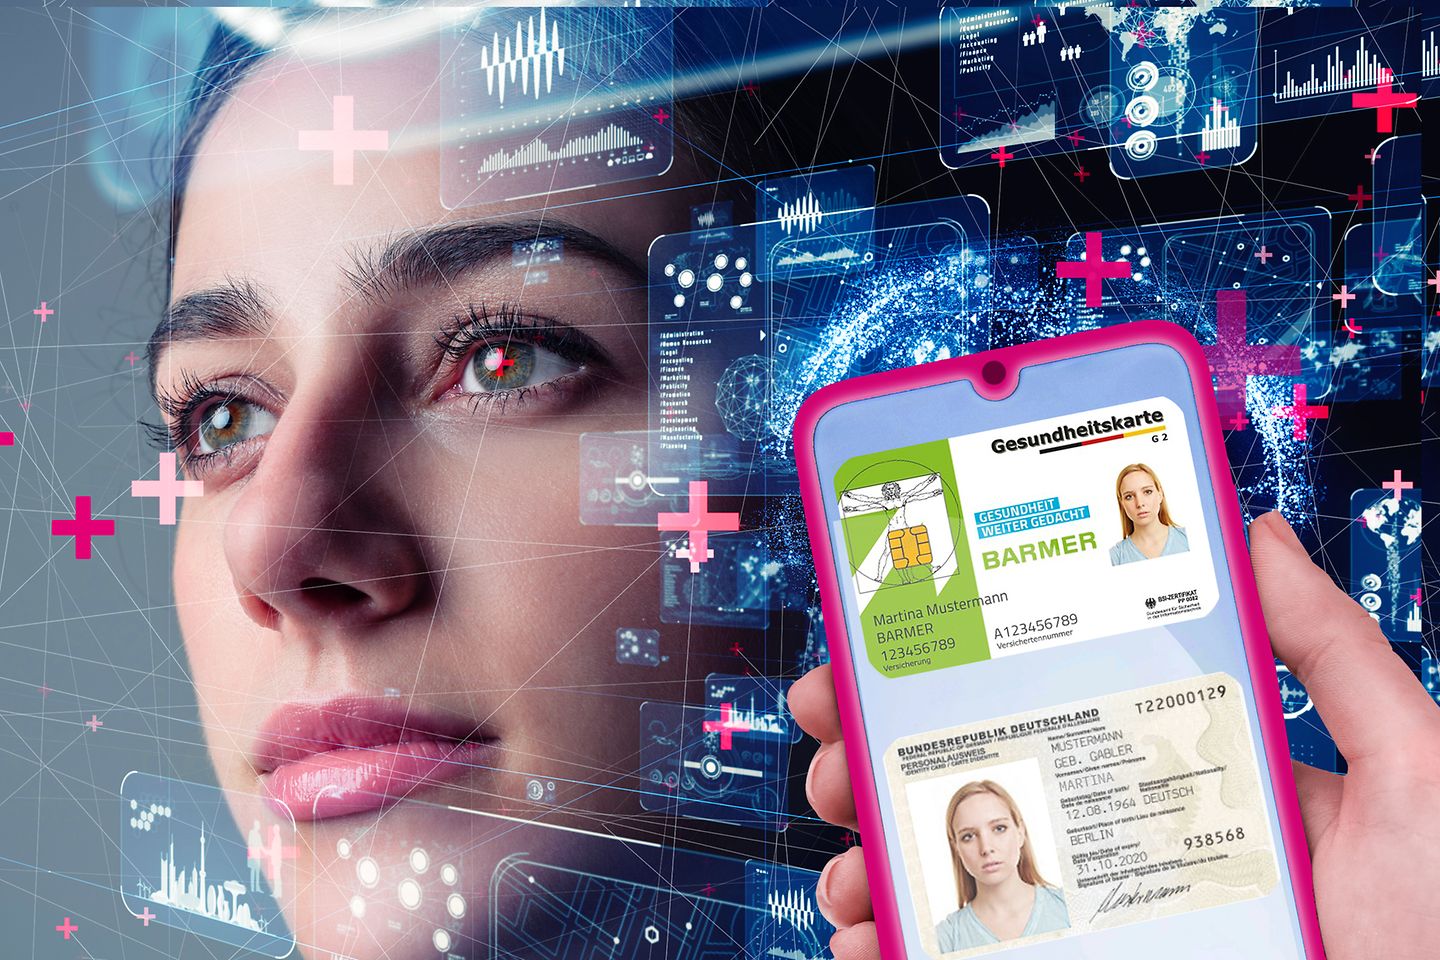 Gesicht einer Frau mit digitalem Overlay und smartphone mit gesundheitskarte